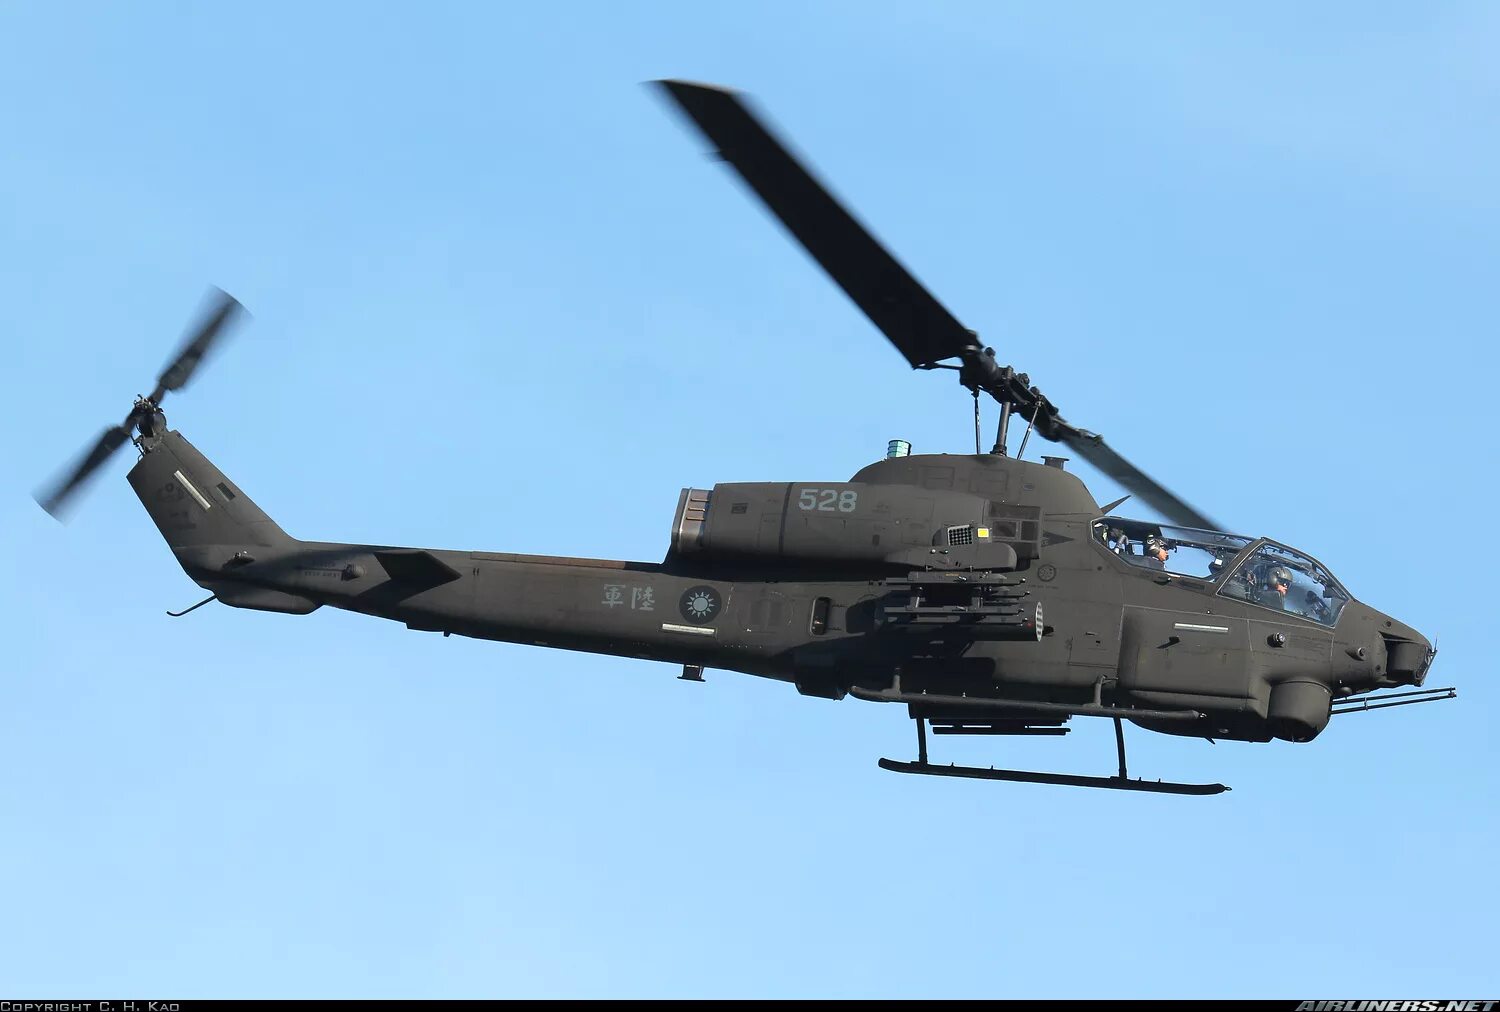 Bell Ah-1w super Cobra. Bell Ah-1 super Cobra. Вертолет Ah-1g Хью Кобра. Вертолет Ah-1w "супер Кобра".